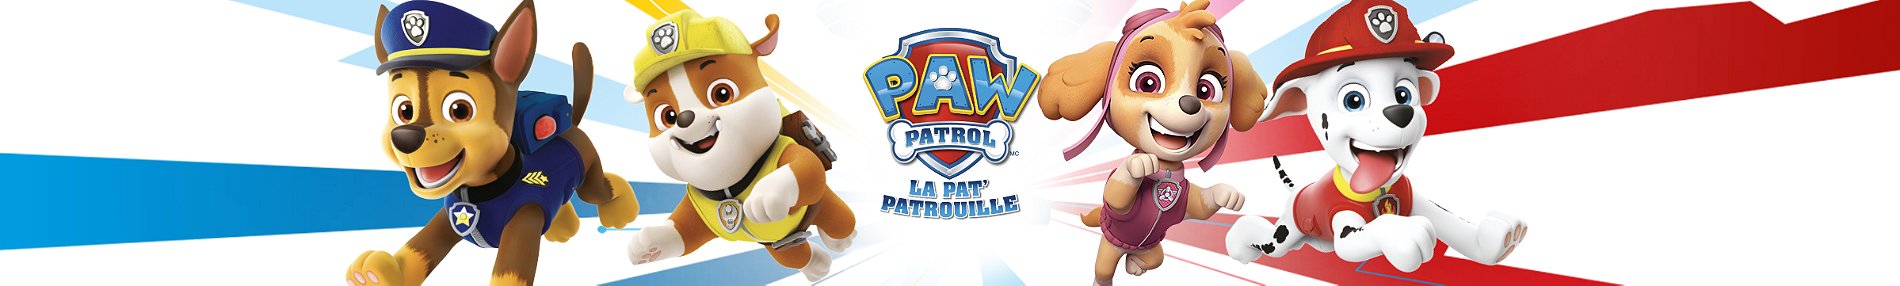 PAW Patrol: Pat Patrouille Le Film - La montre-jeu interactive de Marcus